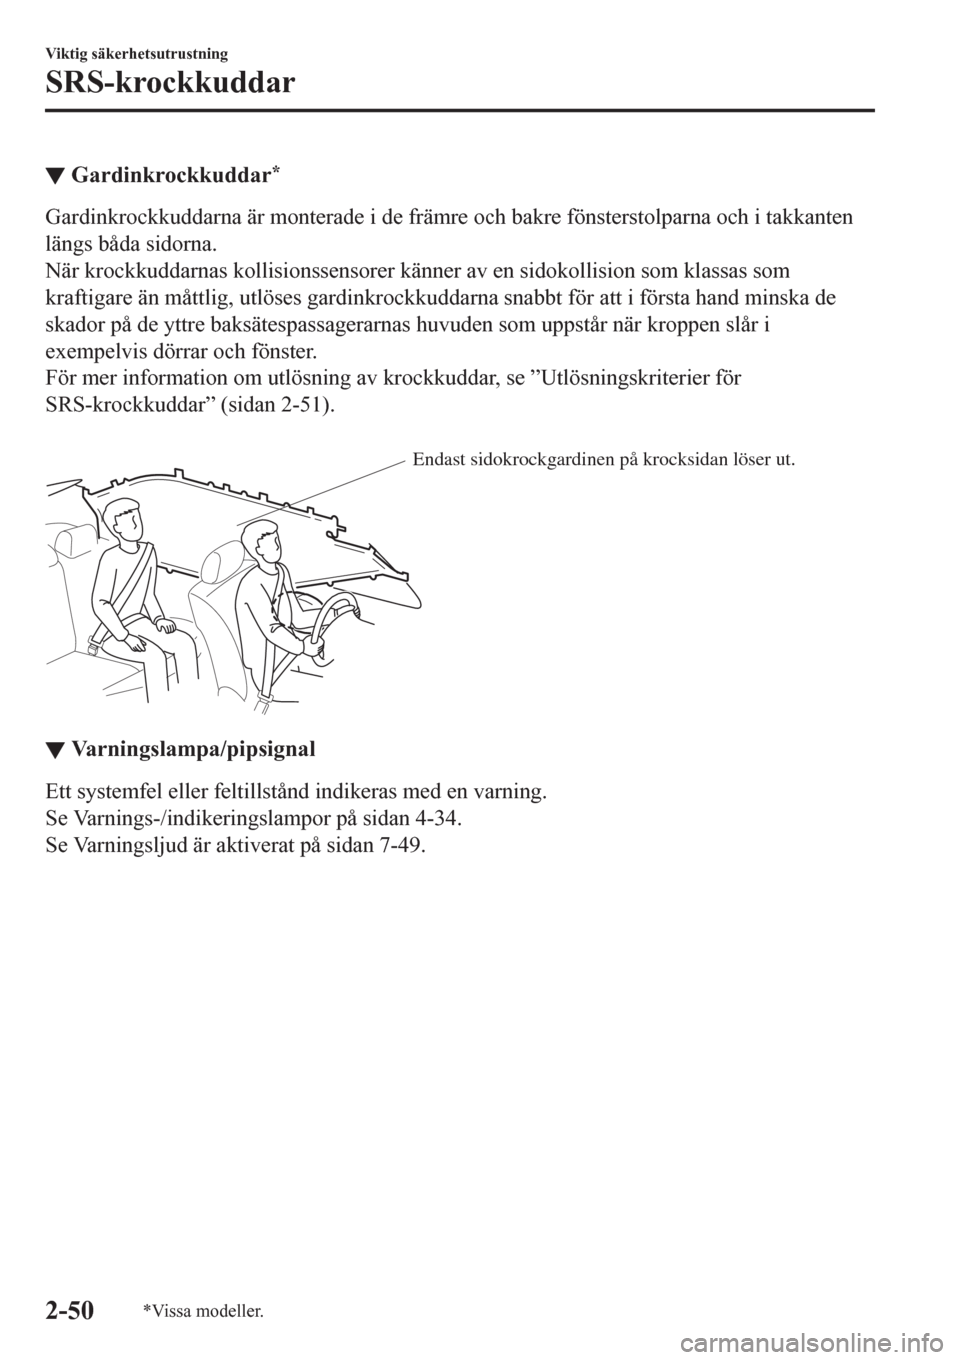 MAZDA MODEL CX-3 2016  Ägarmanual (in Swedish) ▼Gardinkrockkuddar*
Gardinkrockkuddarna är monterade i de främre och bakre fönsterstolparna och i takkanten
längs båda sidorna.
När krockkuddarnas kollisionssensorer känner av en sidokollisio